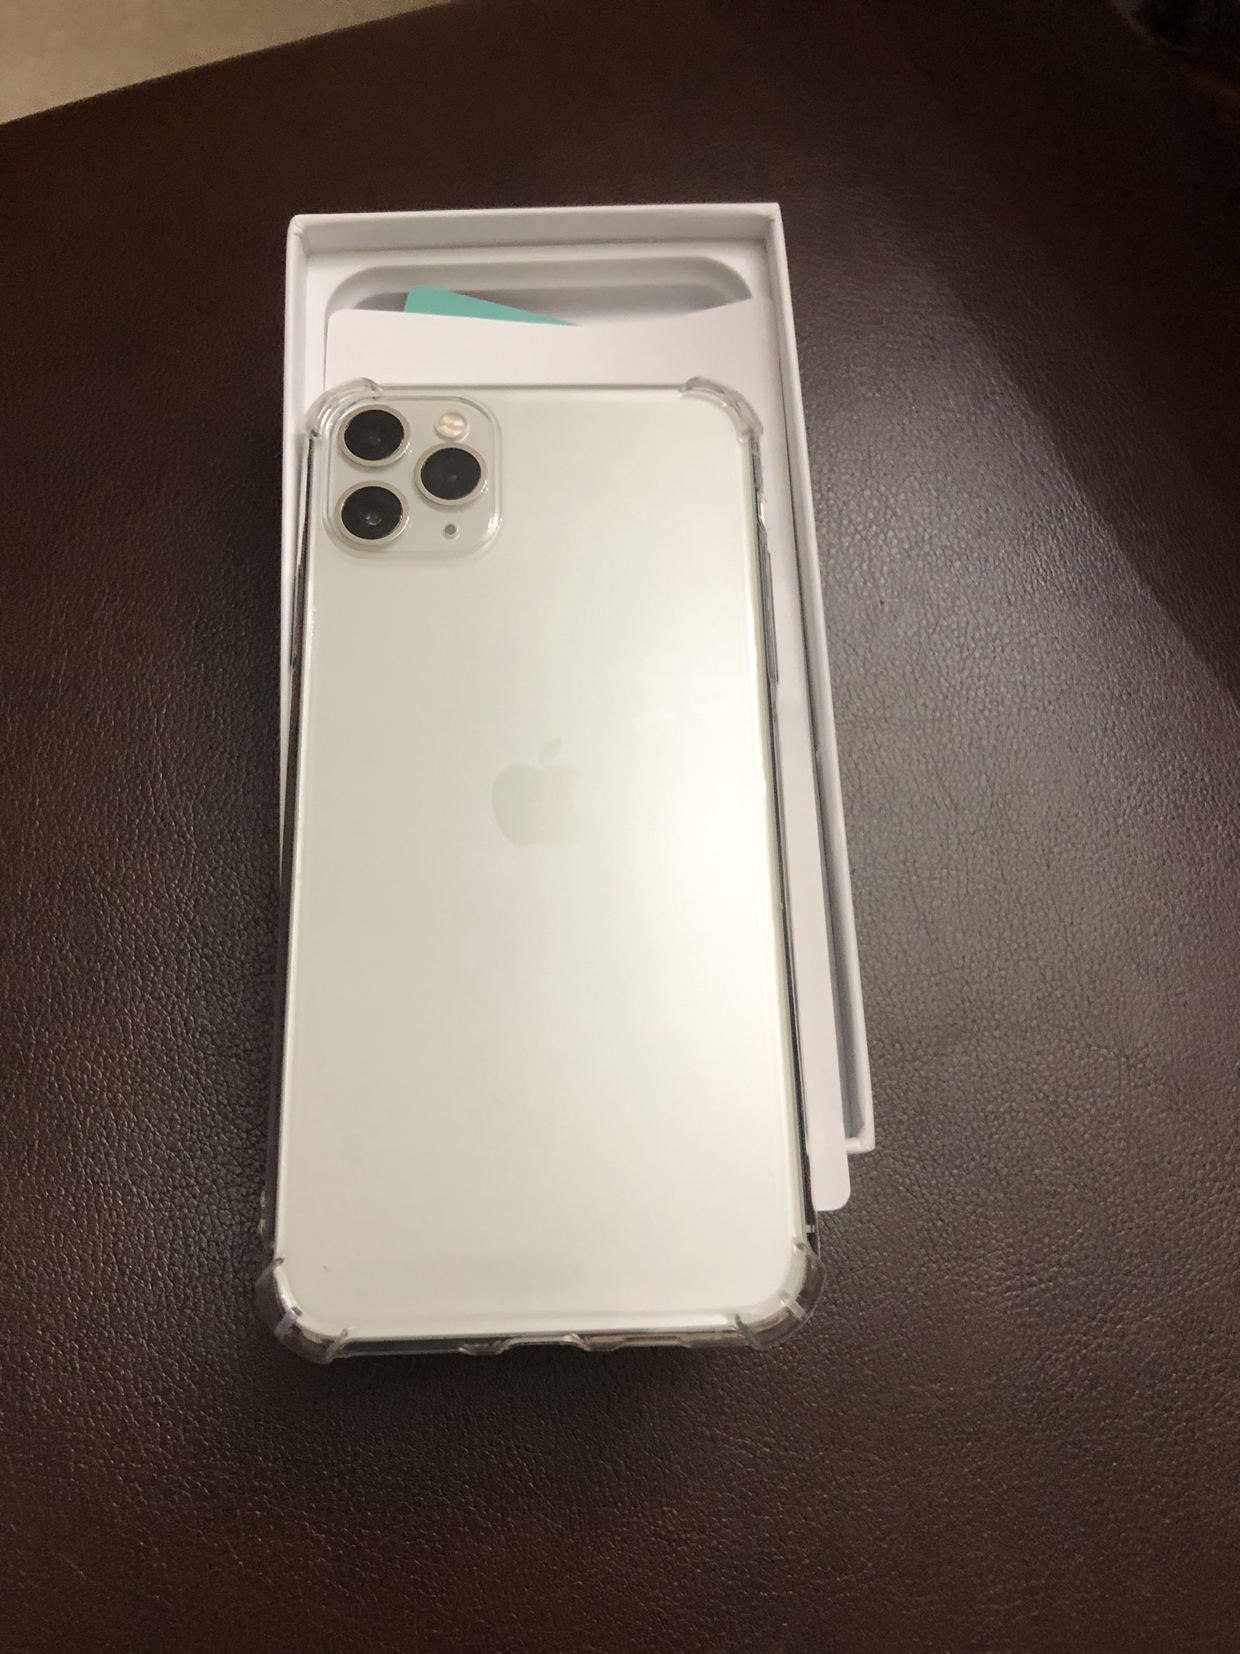 【2019新款】apple/苹果 iphone11pro max 512gb 银色 美版有锁裸机